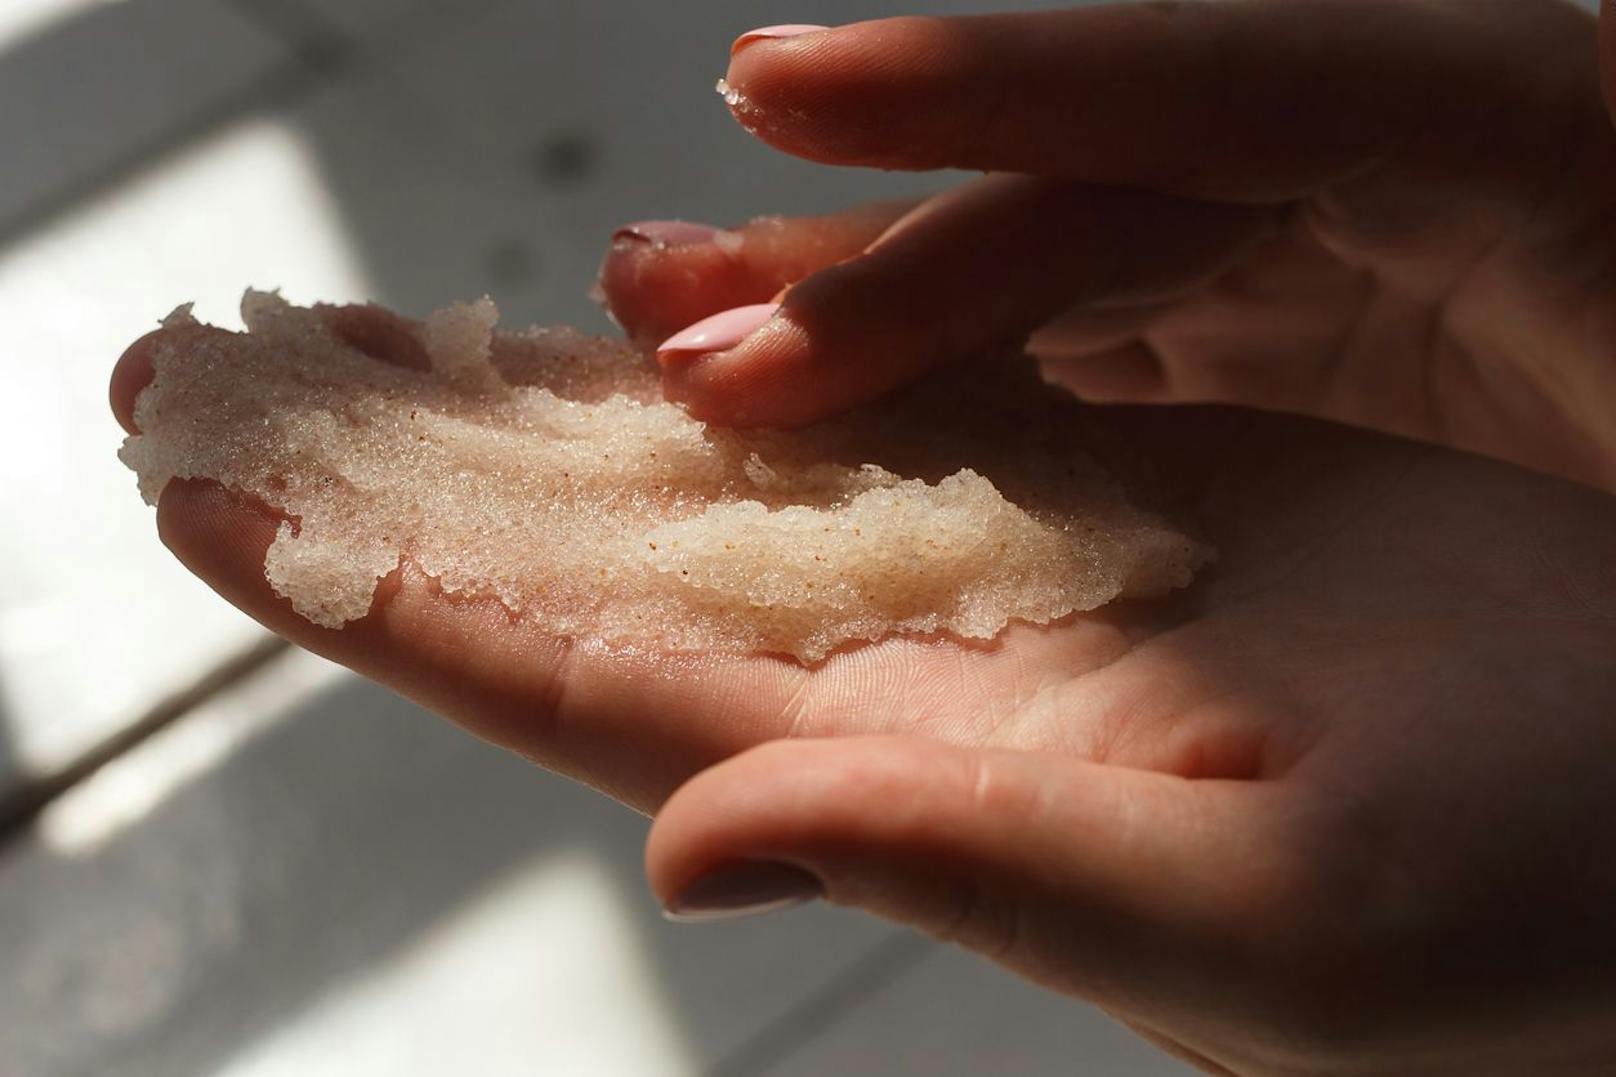 DO: Ein Peeling tut deiner Haut und auch deinen Nägeln gut. Ein sanfter Hand oder Fuß-Scrub kann nämlich abgestorbene Hornschüppchen an deinen Nägeln entfernen. 